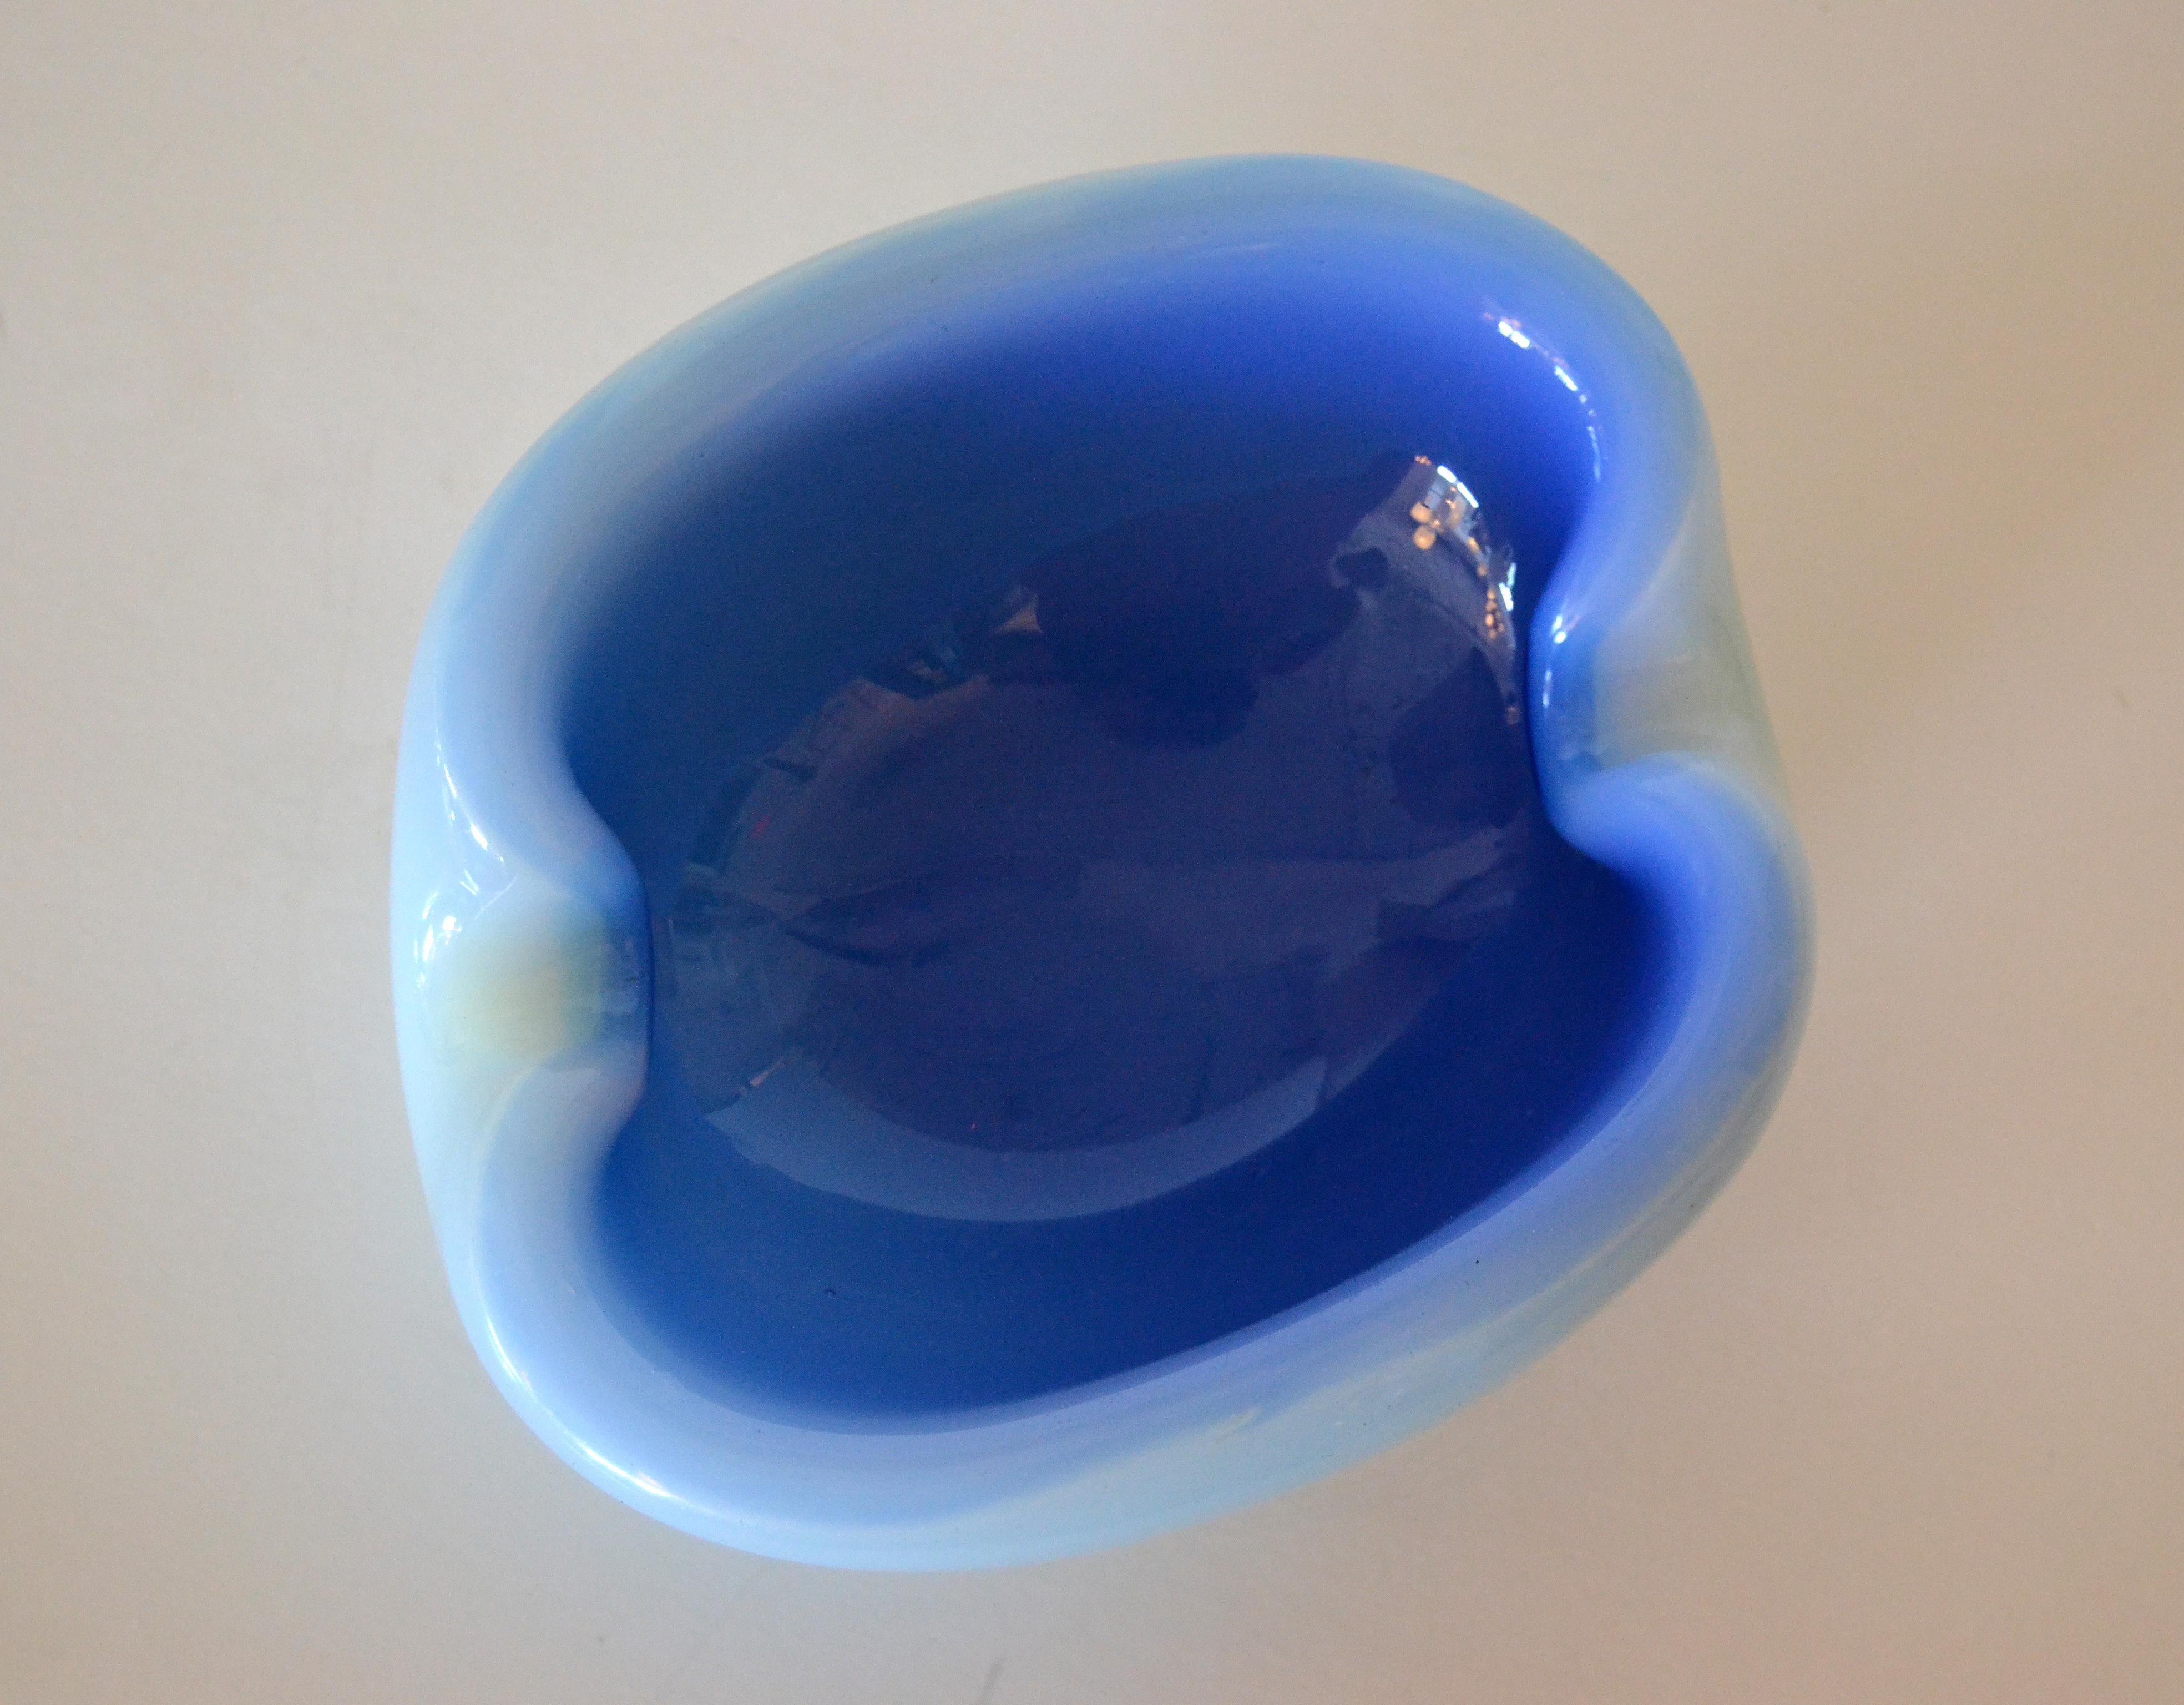 Italienisches mundgeblasenes Murano-Glas, zweifarbig blau, runde Auffangschale.
Türkisblaues, organisch anmutendes Innenleben, hellblaues Außengehäuse.
Einfach schön.